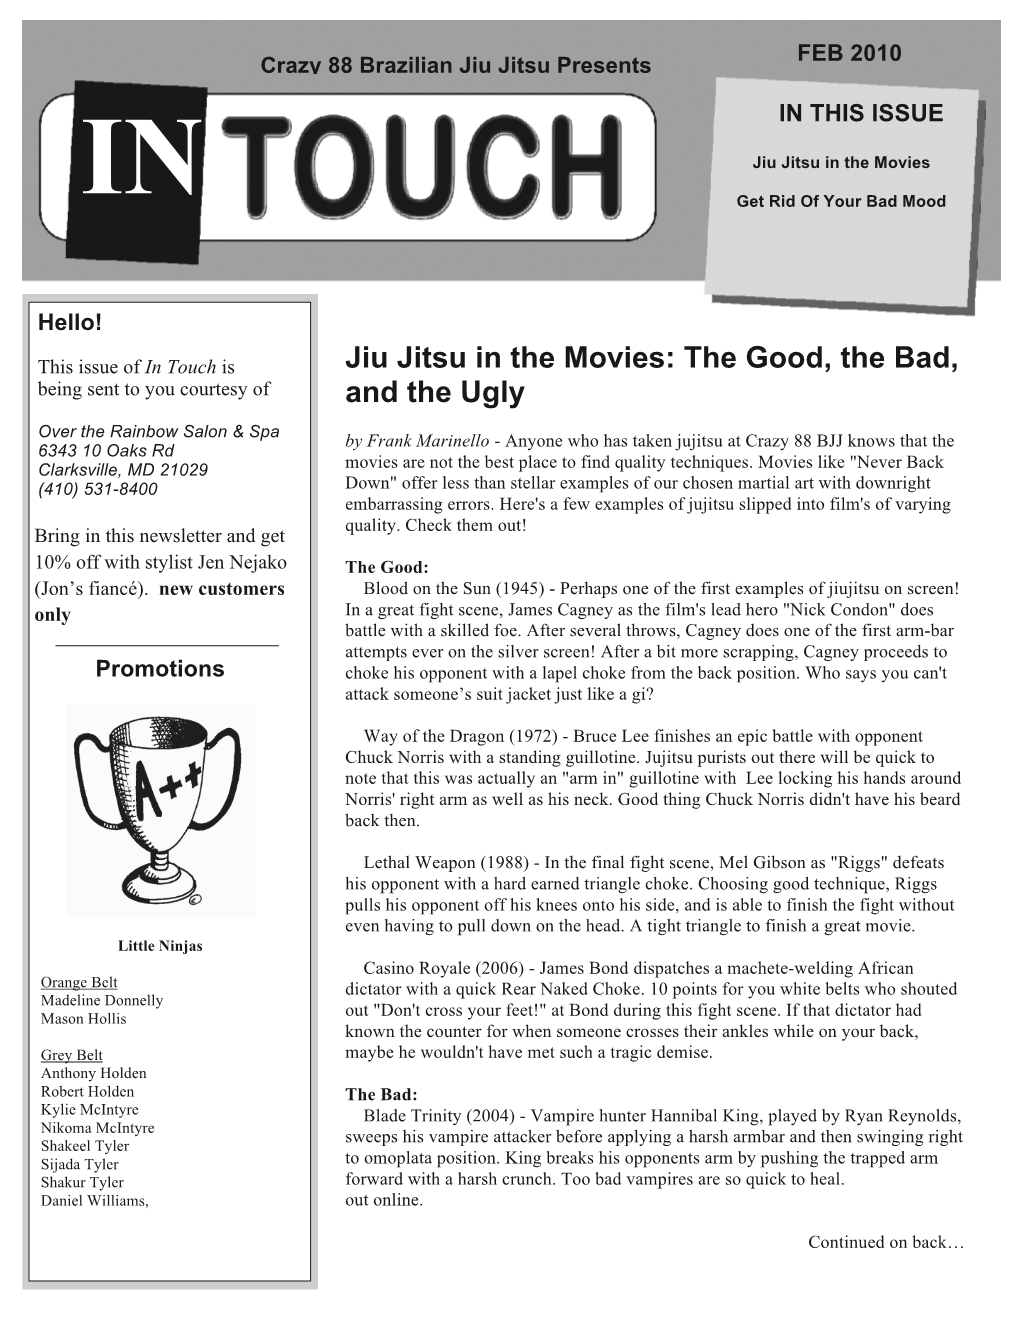 Jiu Jitsu in the Movies